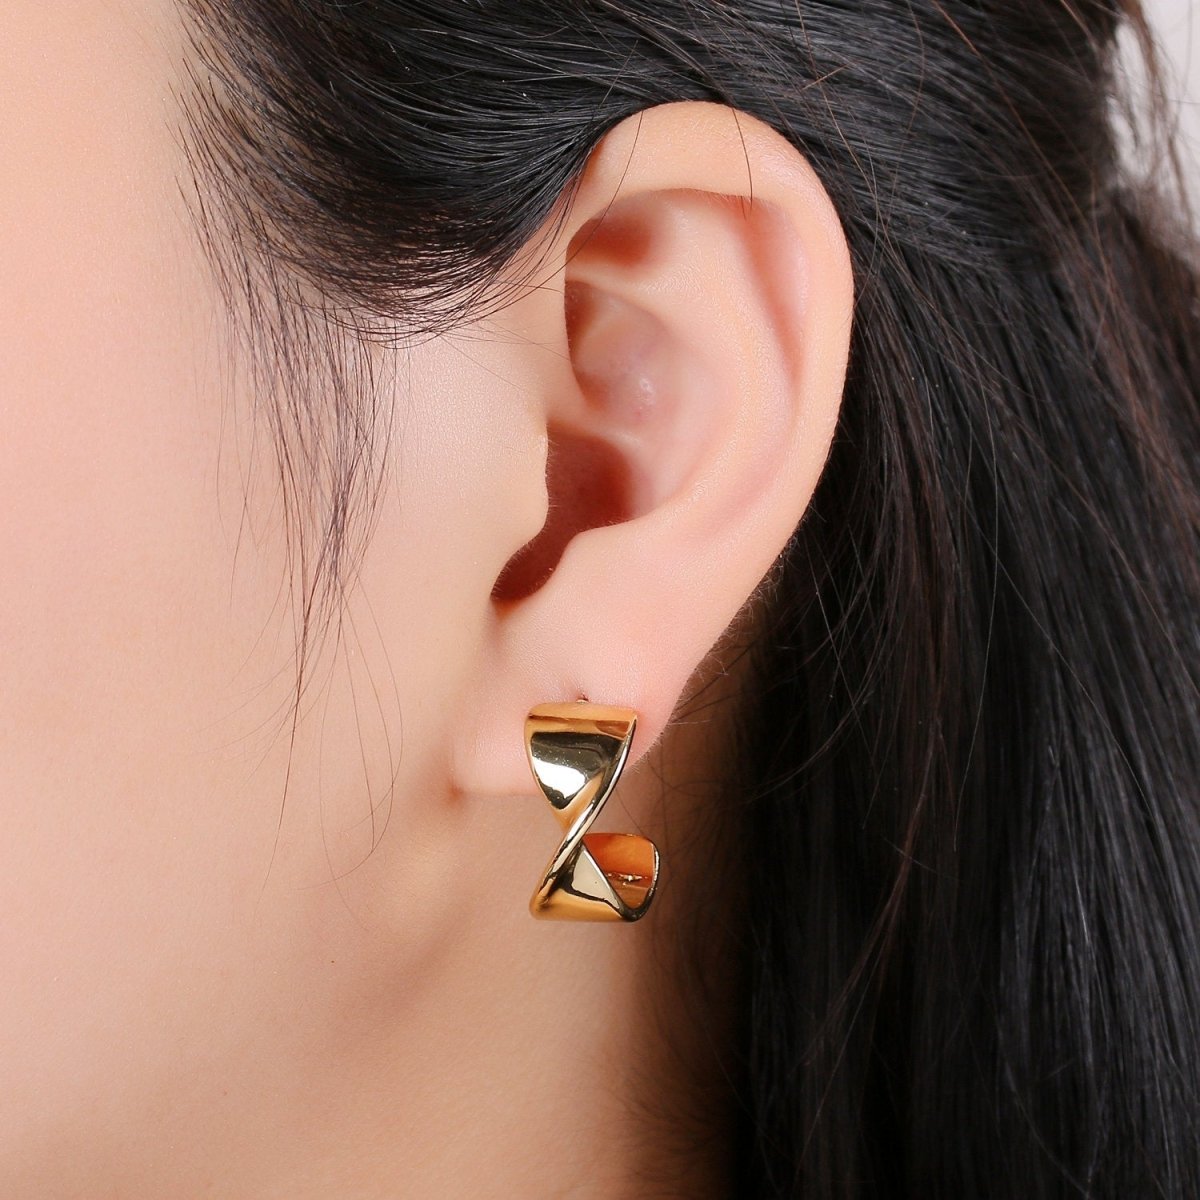 Fancy Gold Hoop Earrings, Gold Hoops, Bold Hoop Earrings, Twisted Hoop Earrings, Dainty Hoops, Minimalist Earrings, Modern Earrings, Gift Q-248 - DLUXCA